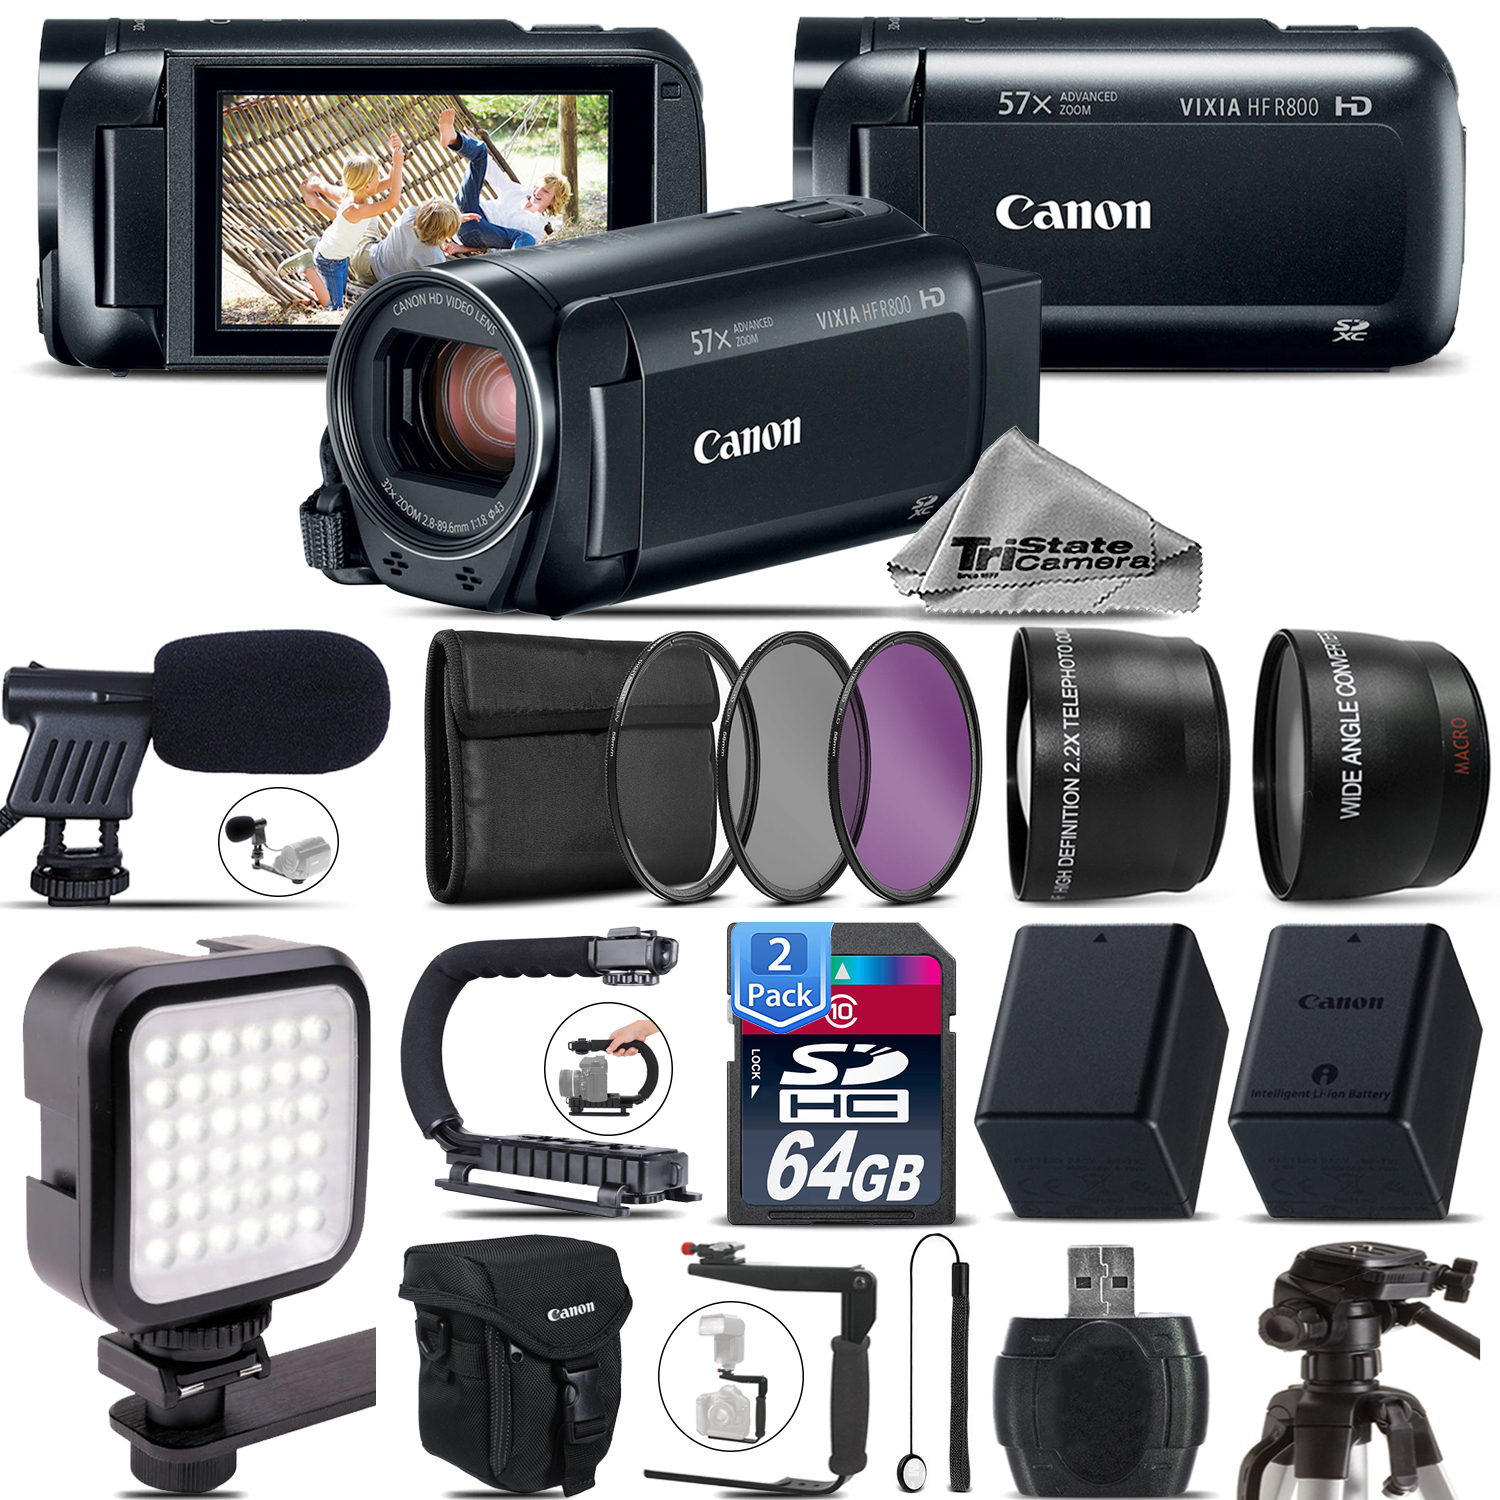 VIXIA HF R 800 HFR 800 Camcorder Black + MIC + Filter Kit + LED +128GB Kit *FREE SHIPPING*